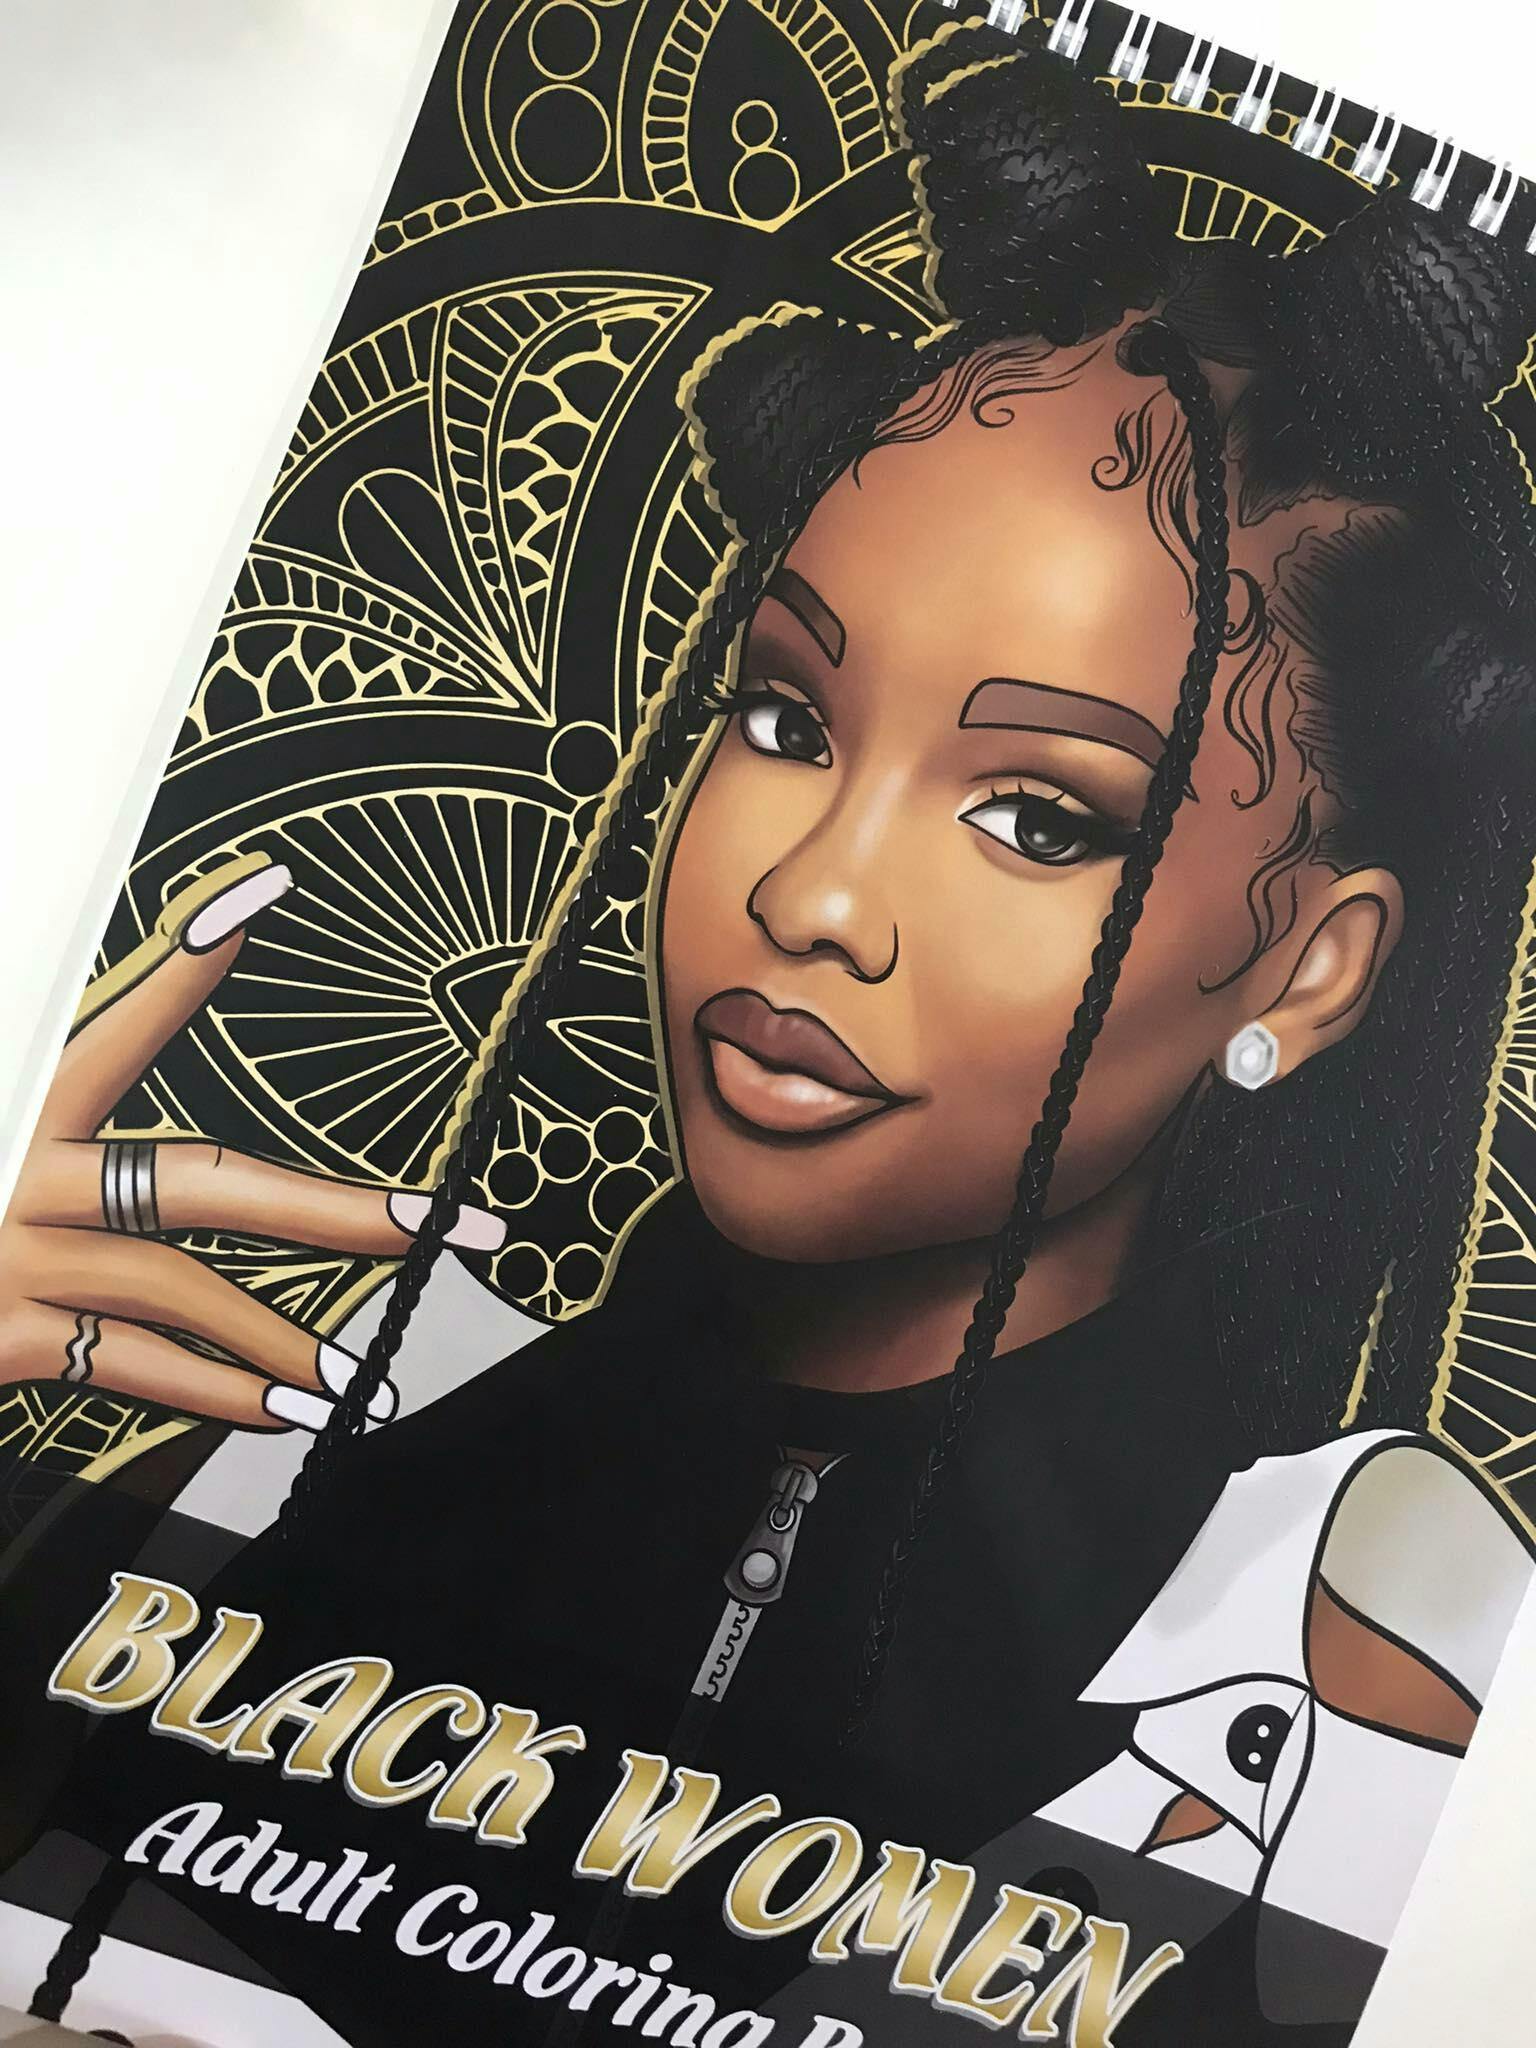 100 BLACK WOMEN ADULT COLORING BOOK: Beautiful African American Women  Portraits| Coloring Book for Black Women| Black Girl Magic Coloring Book